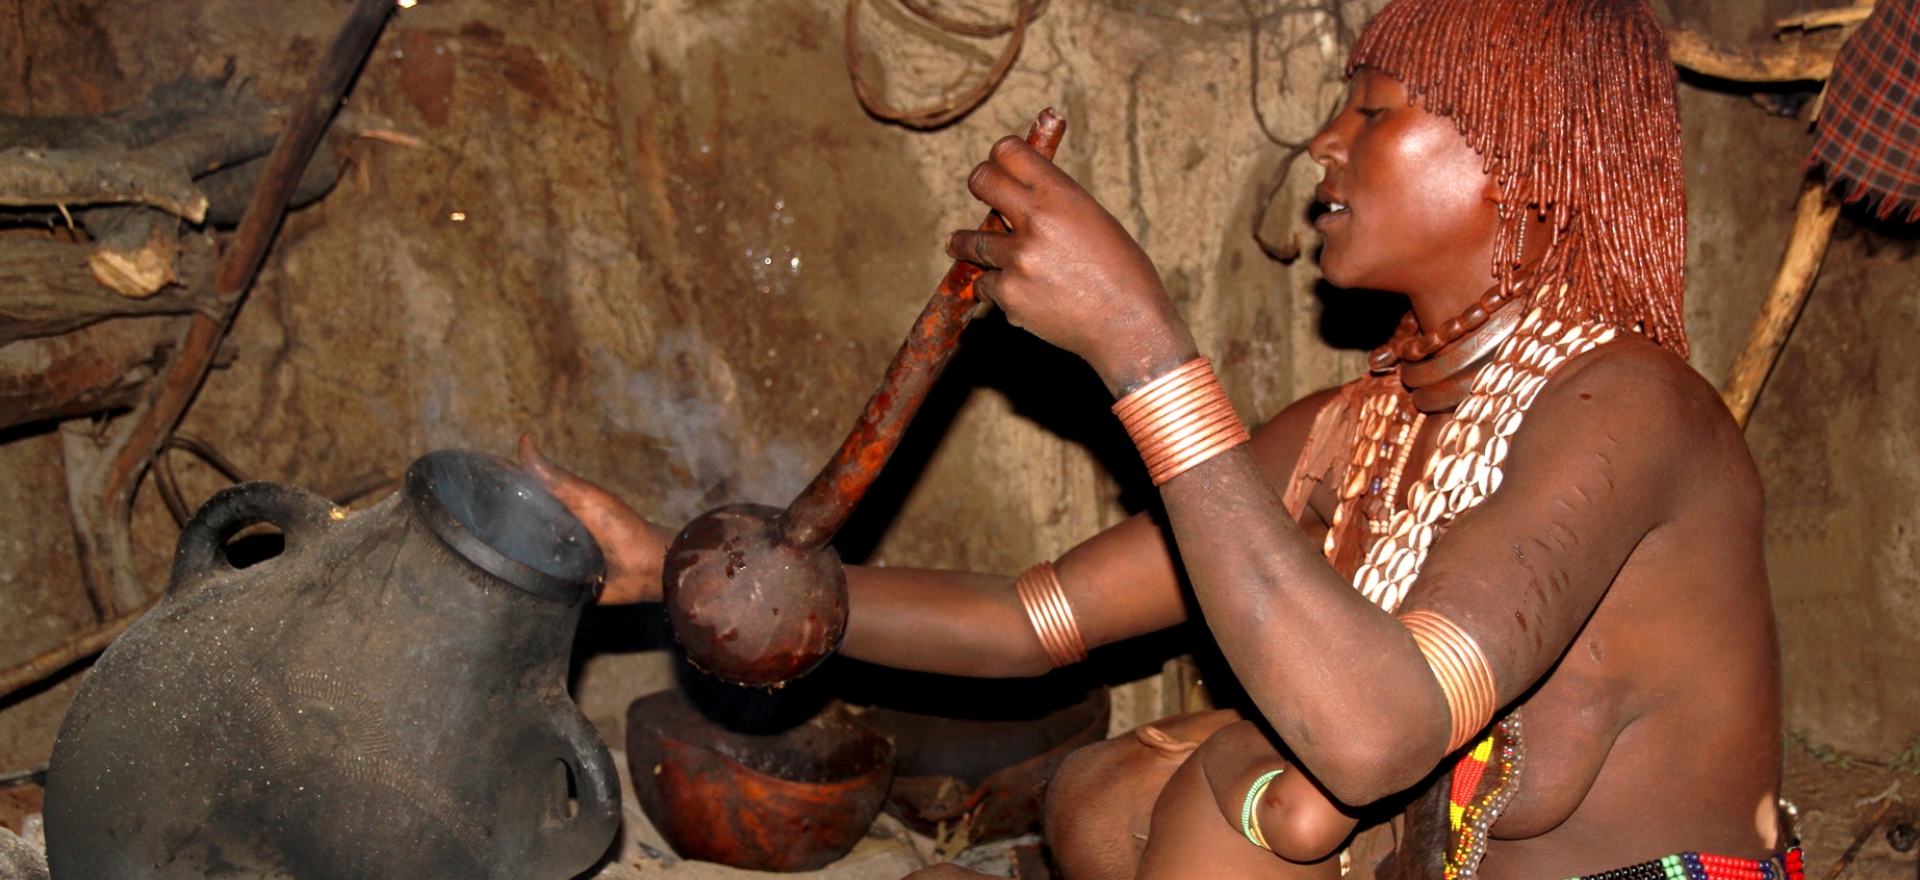 Hamarové, Etiopie - Planeta lidí